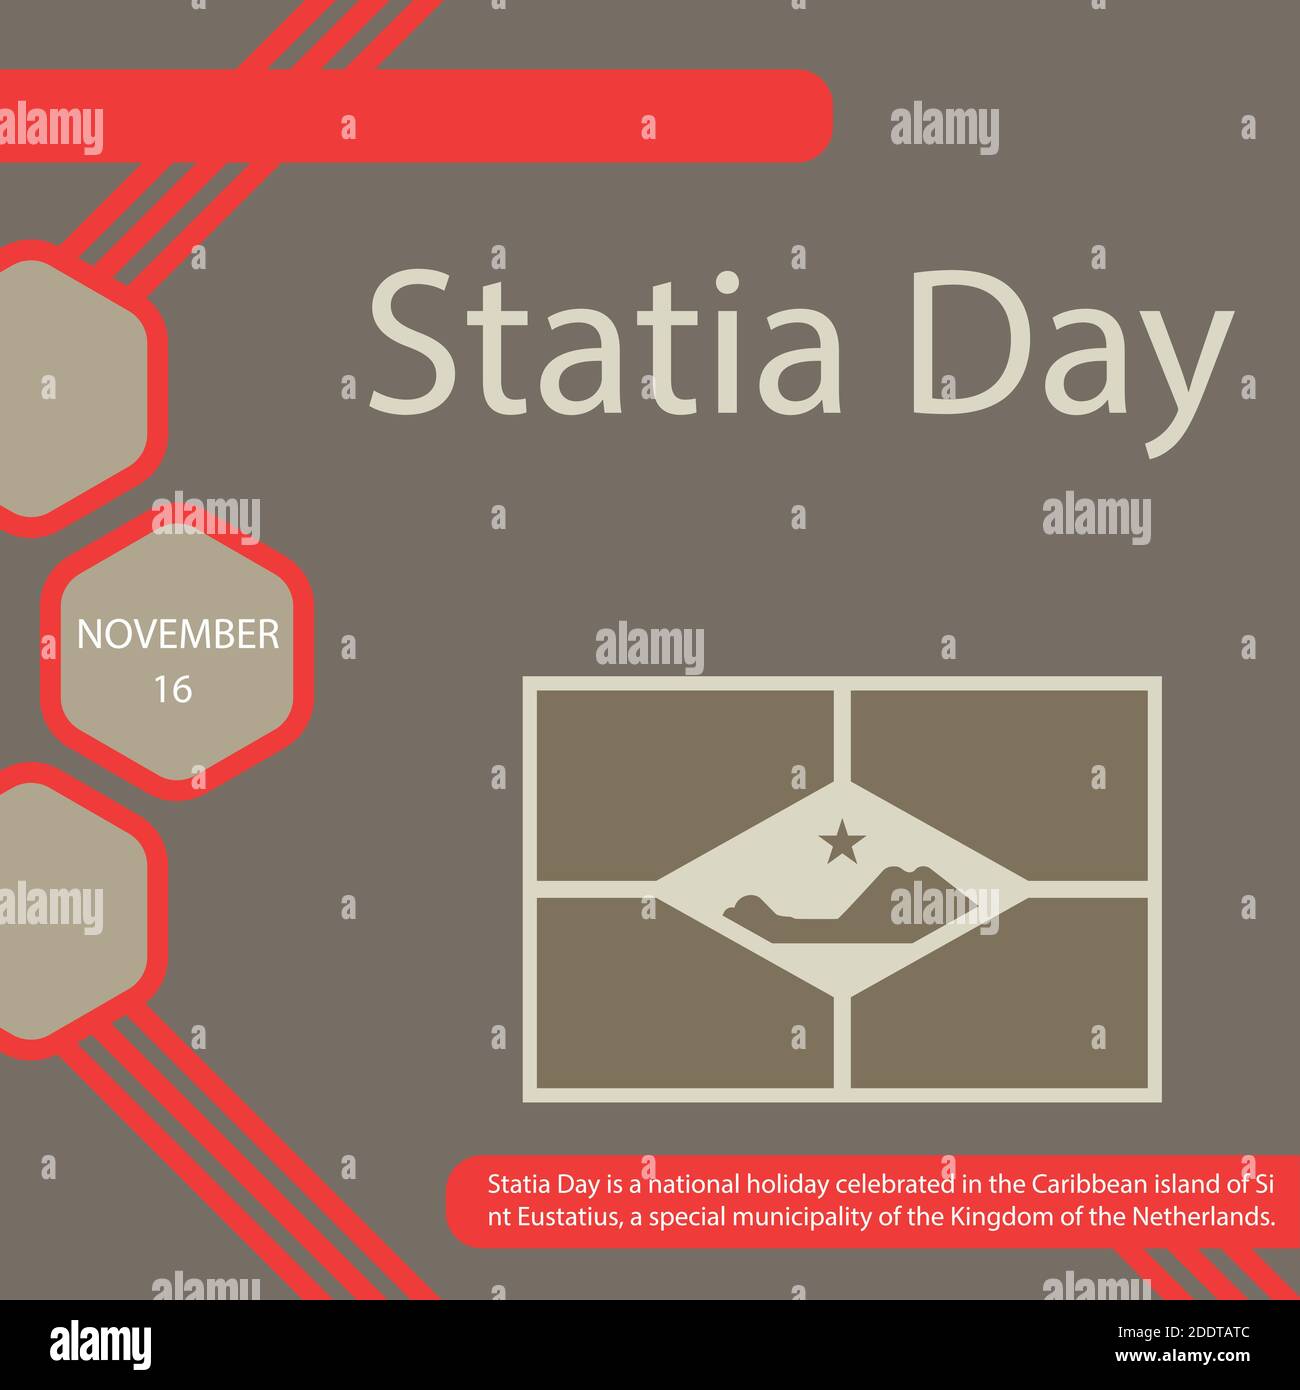 Statia Day ist ein Nationalfeiertag auf der karibischen Insel Sint Eustatius, einer besonderen Gemeinde des Königreichs der Niederlande. Stock Vektor